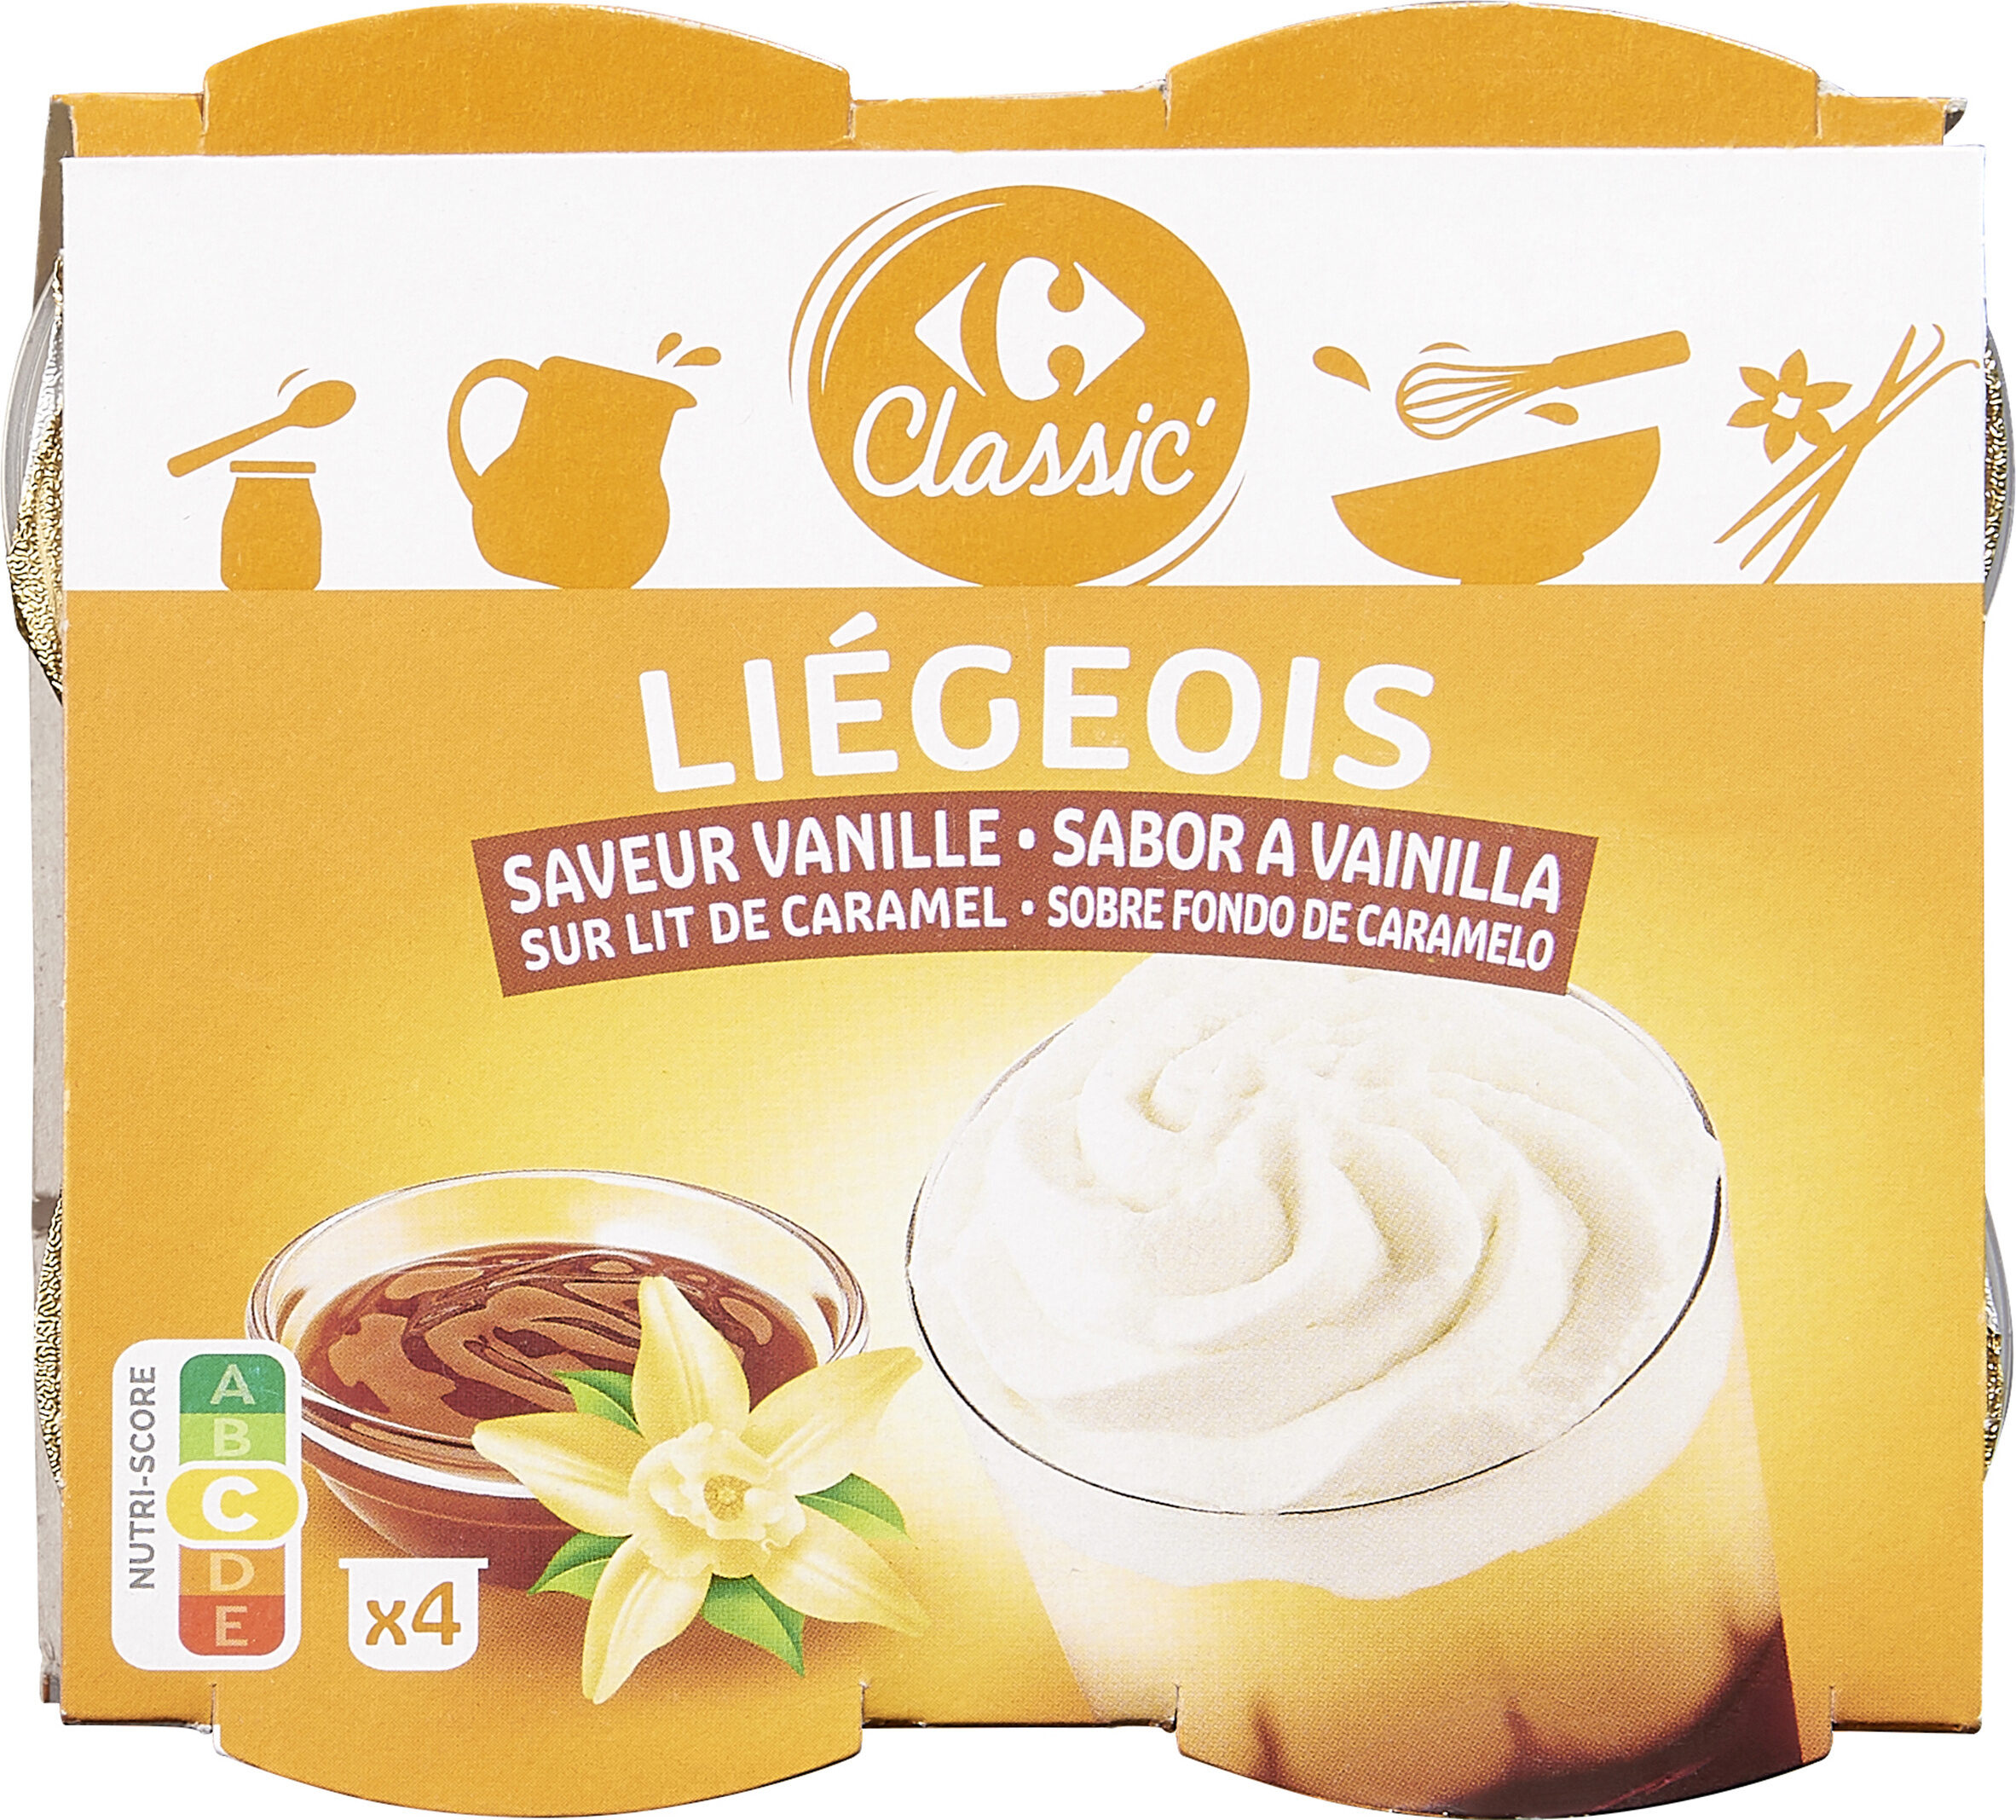 Liégeois Saveur vanille sur lit de caramel - Producte - fr